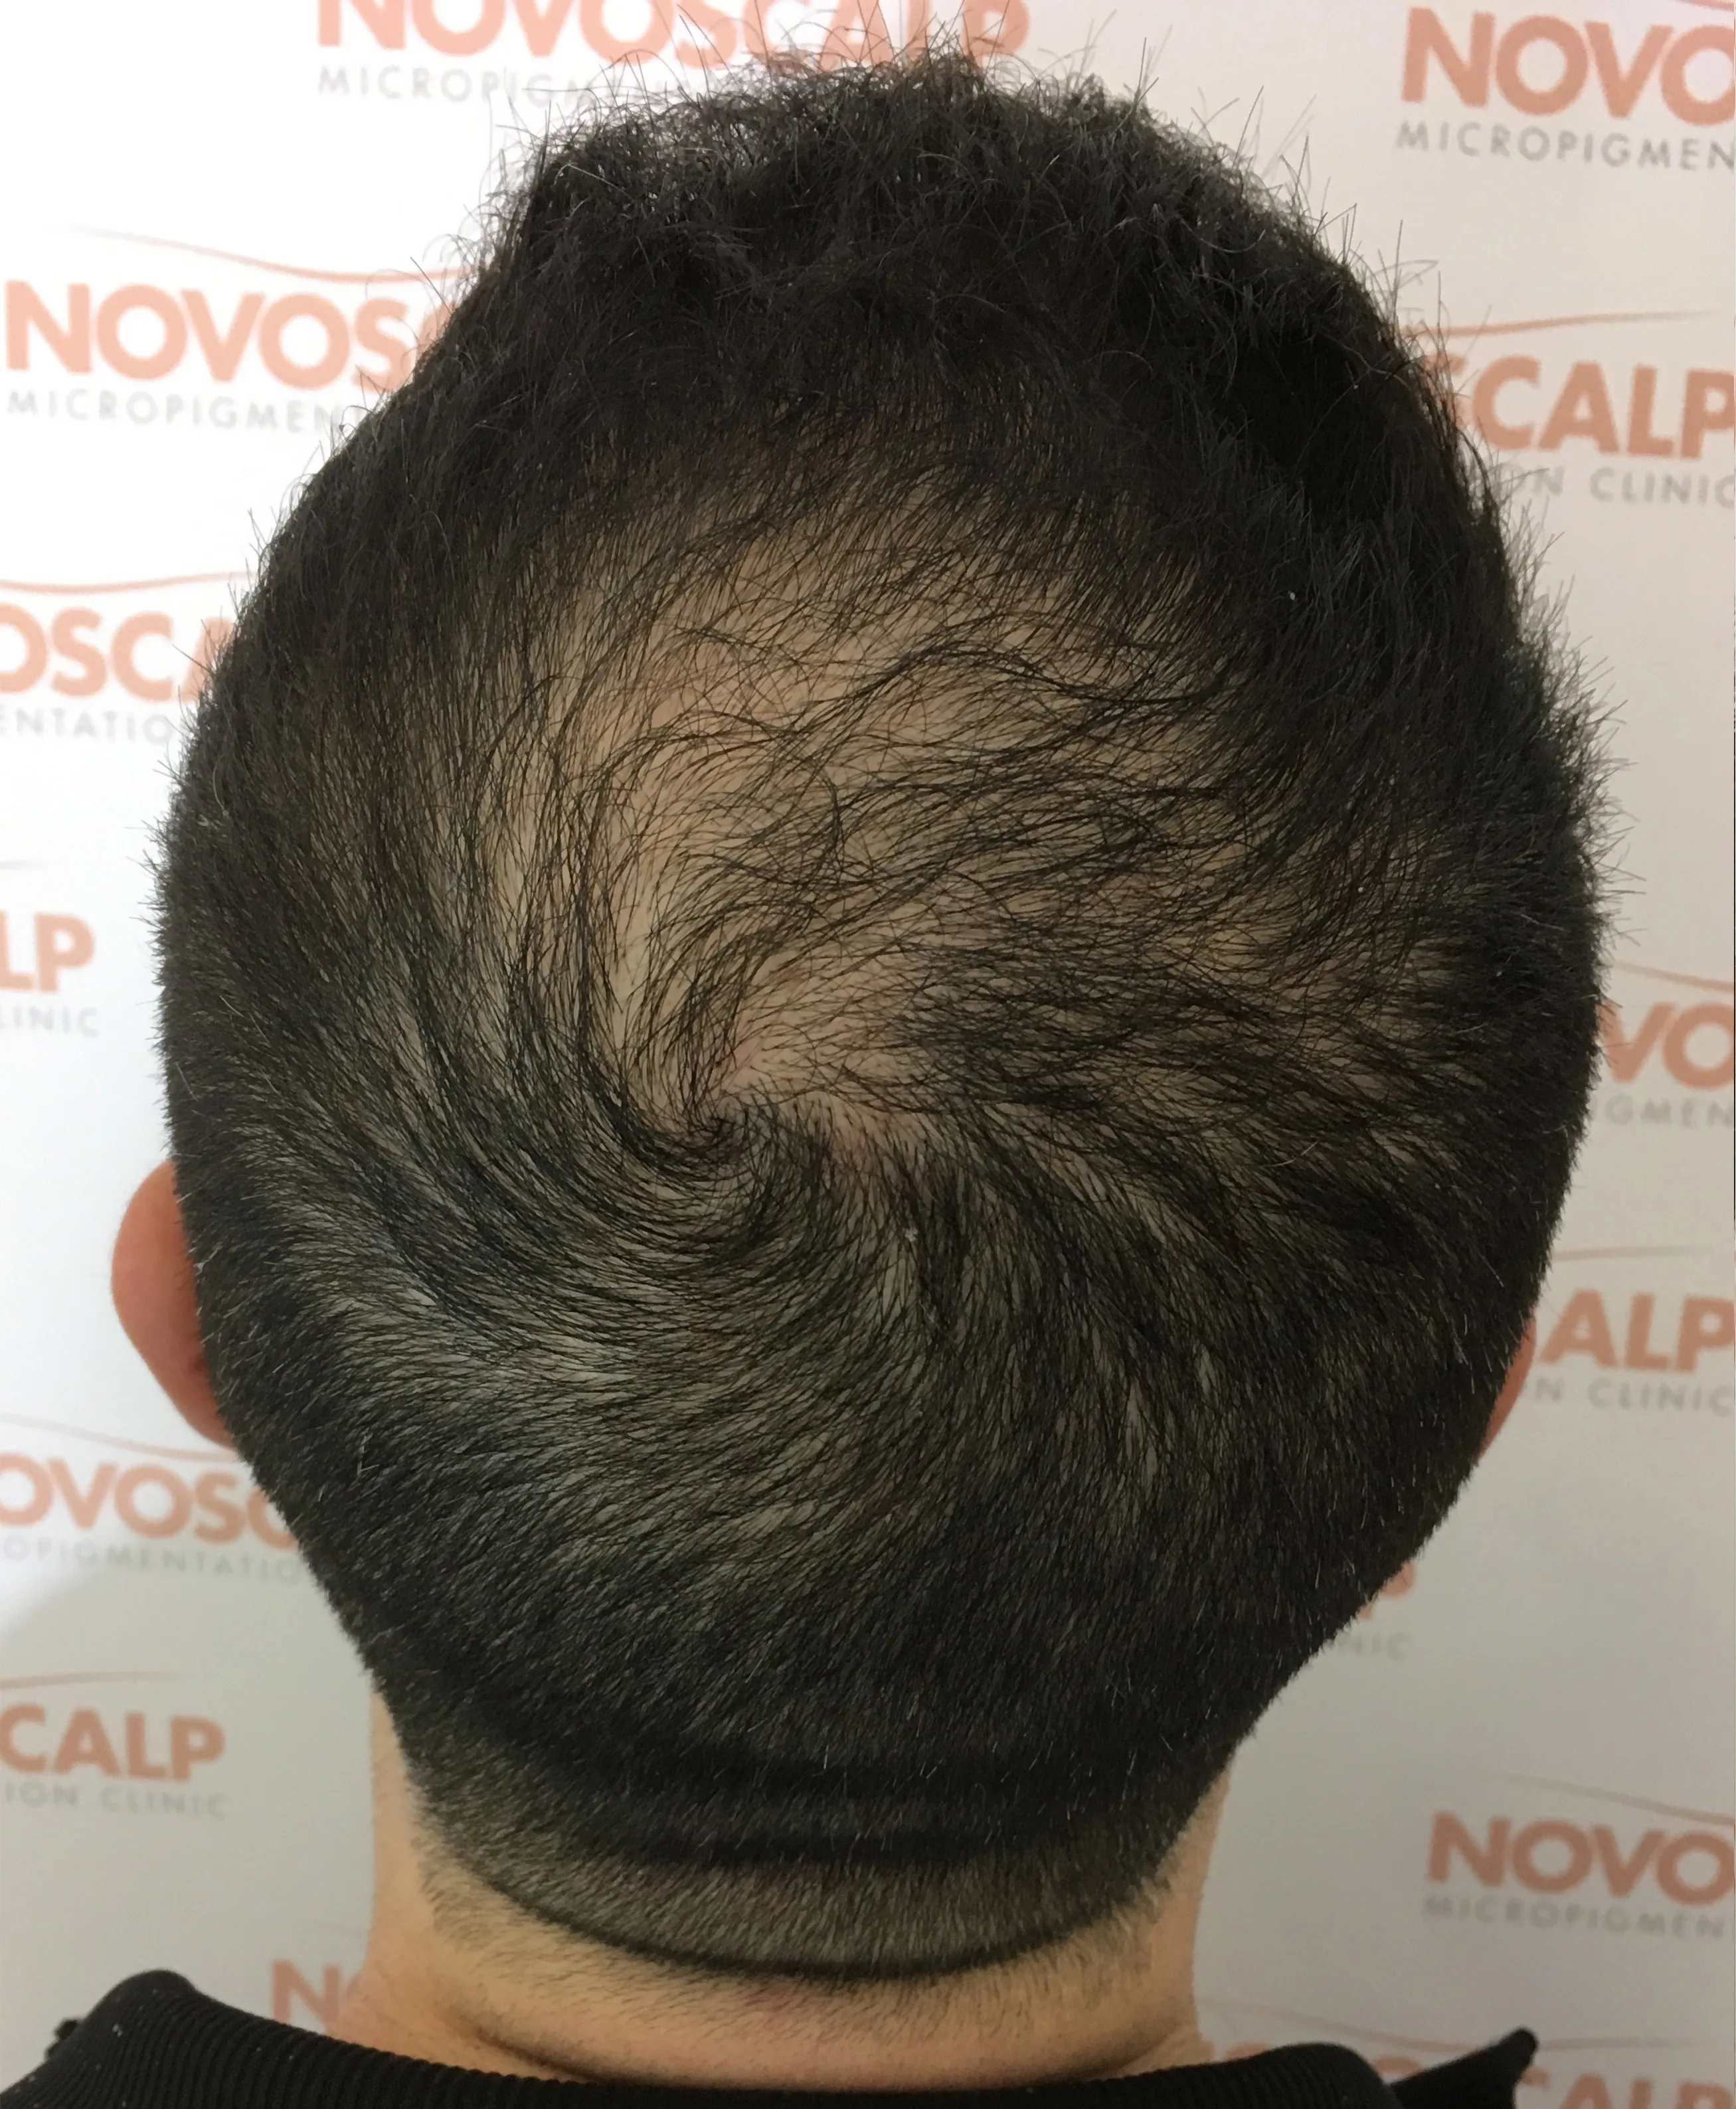 Novoscalp Long Hair SMP Before